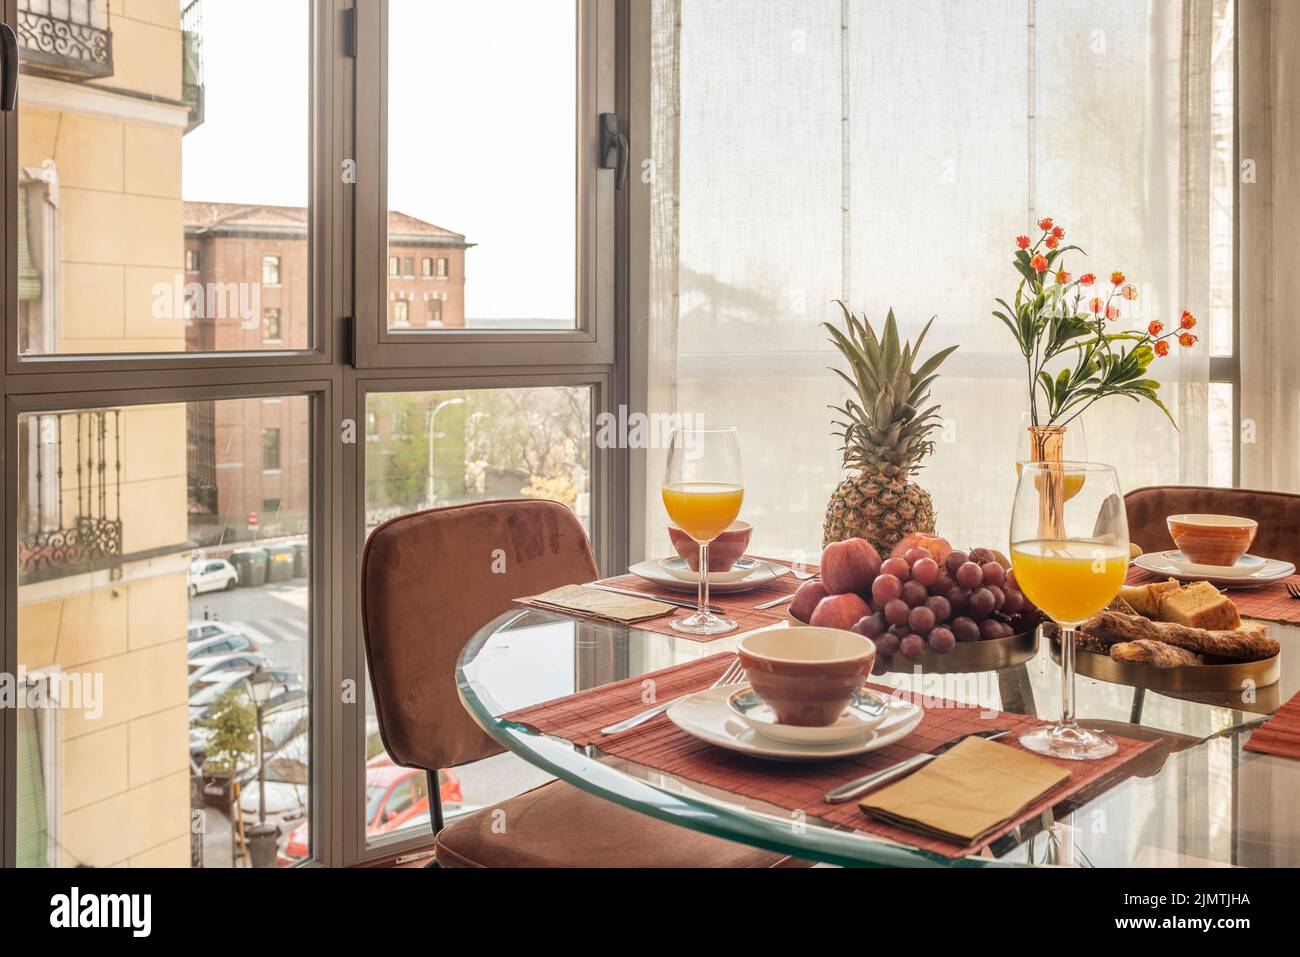 Salle à manger avec une table circulaire en verre pleine de fruits variés, des verres de jus d'orange et des chaises brunes à côté d'une baie vitrée avec vue Banque D'Images